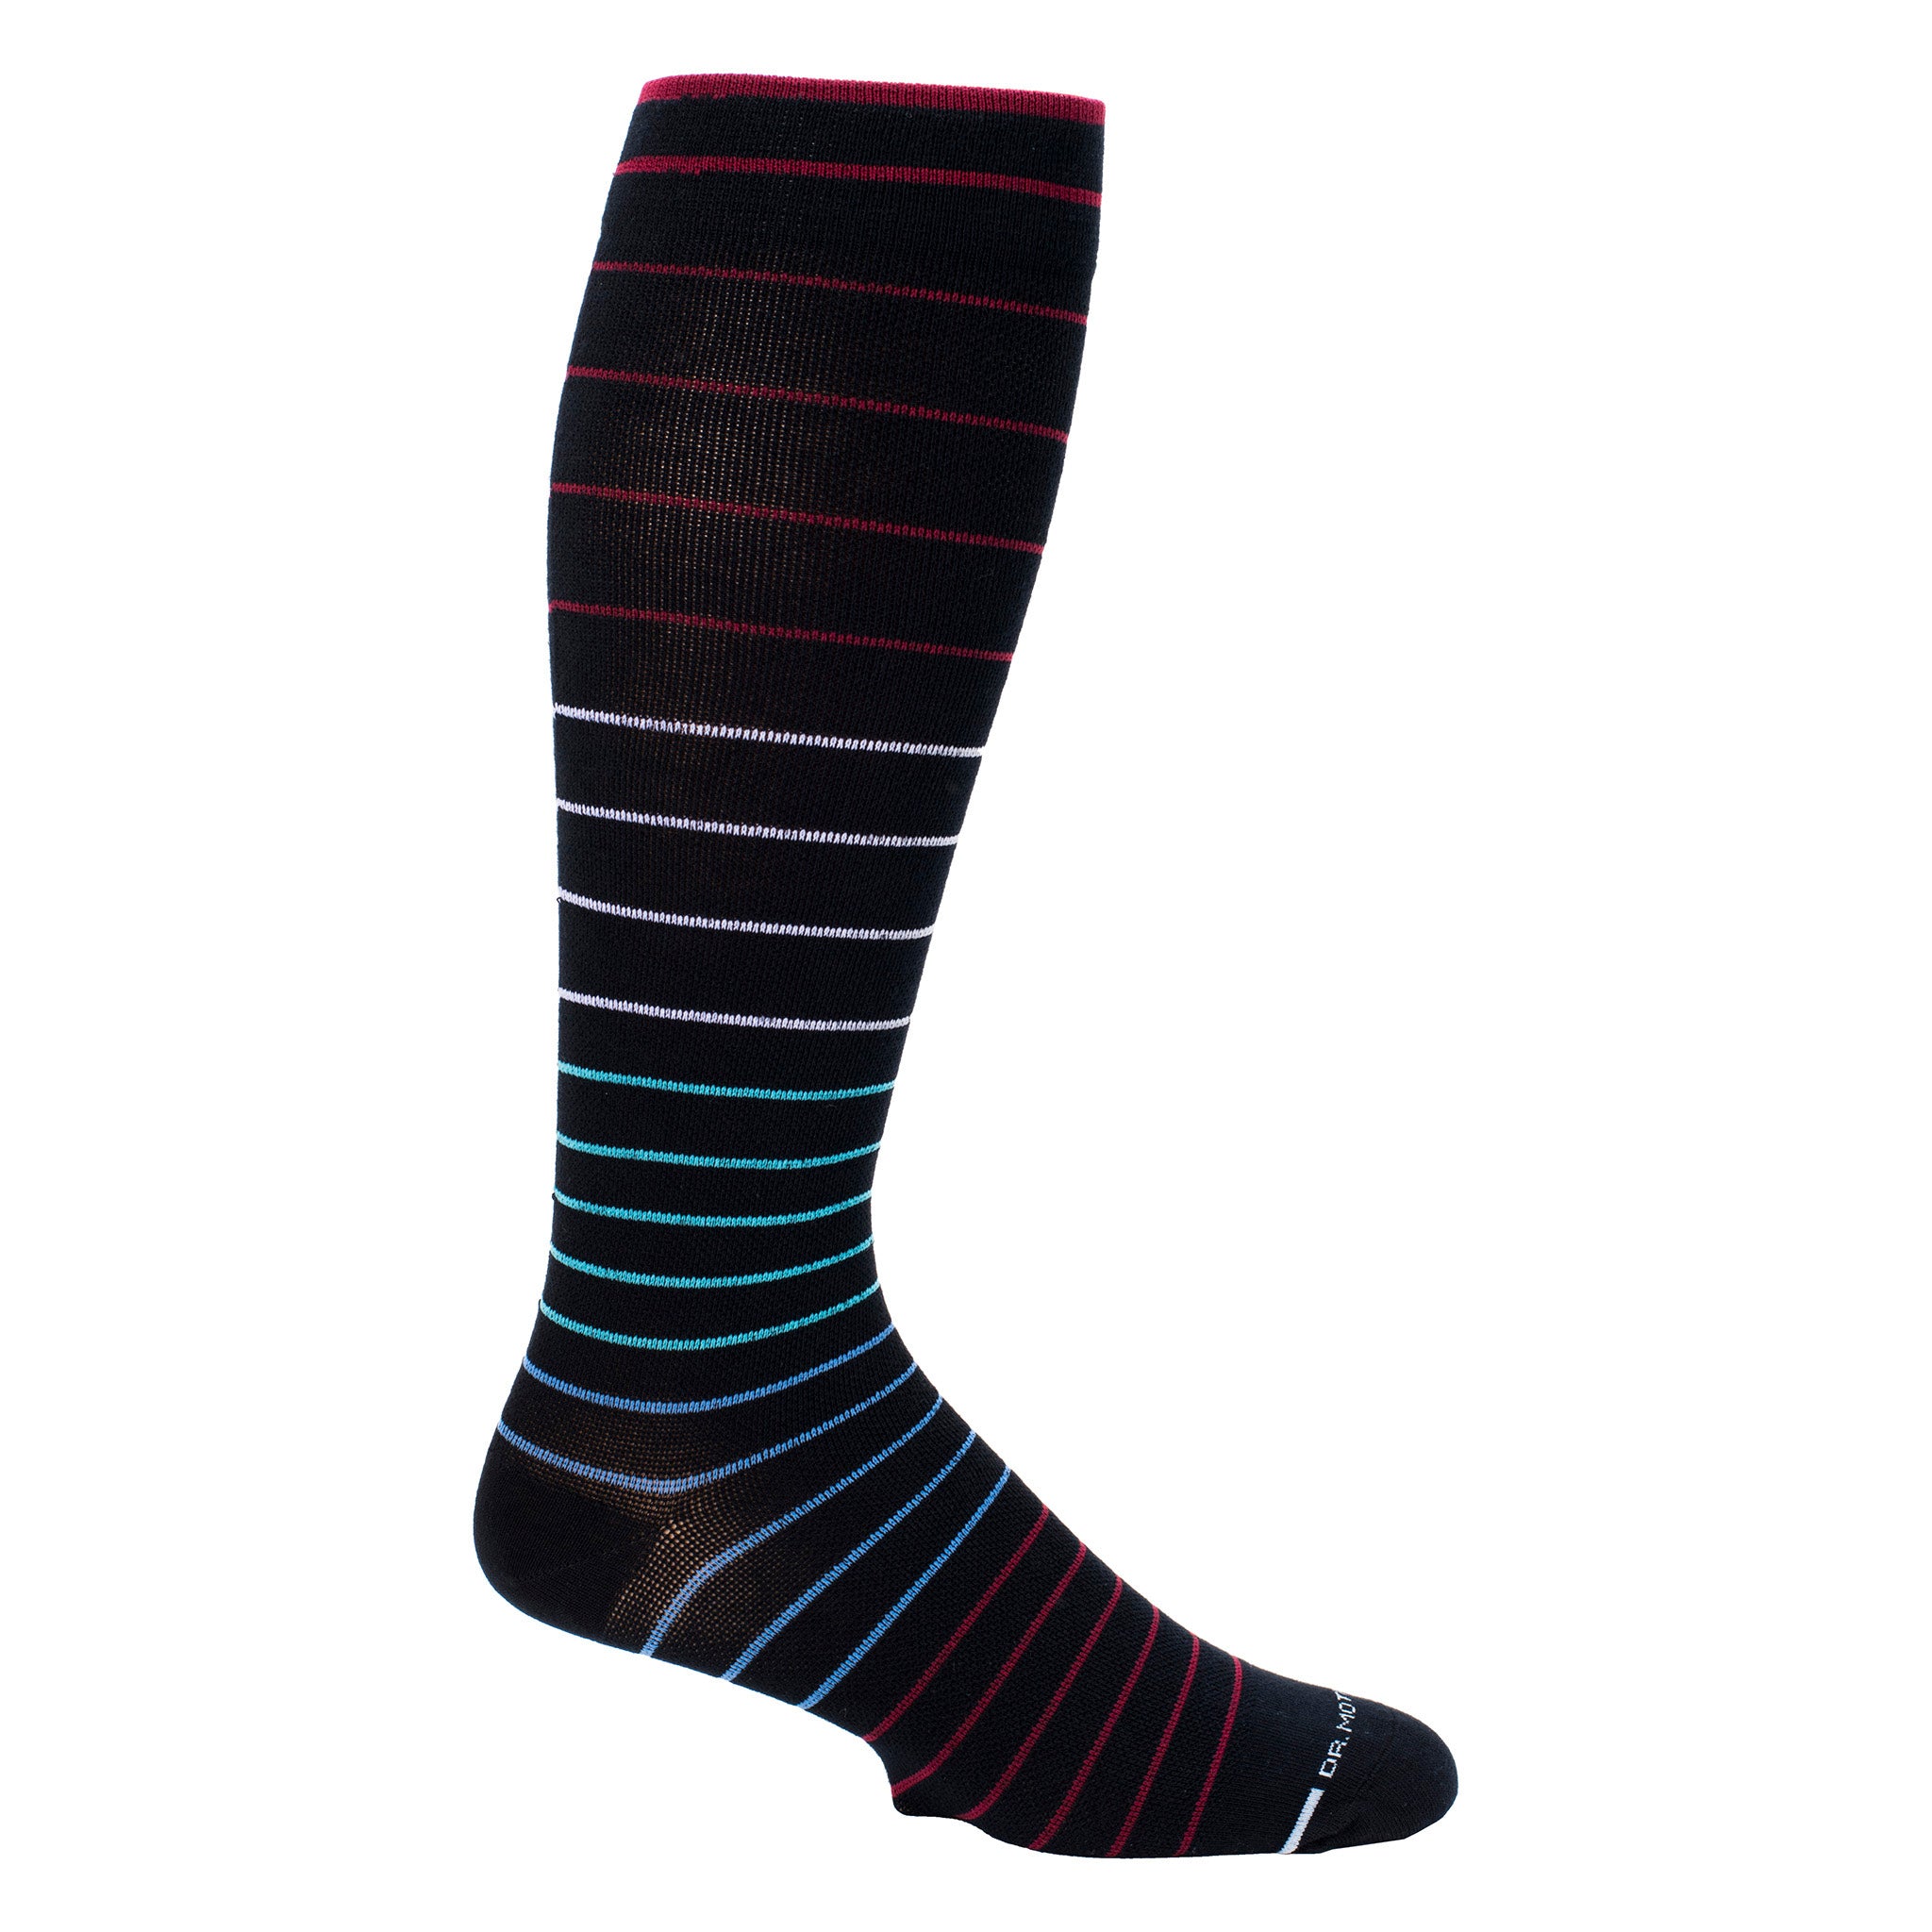 Jaquard Stripe | Knee-High Compression Socks For Men